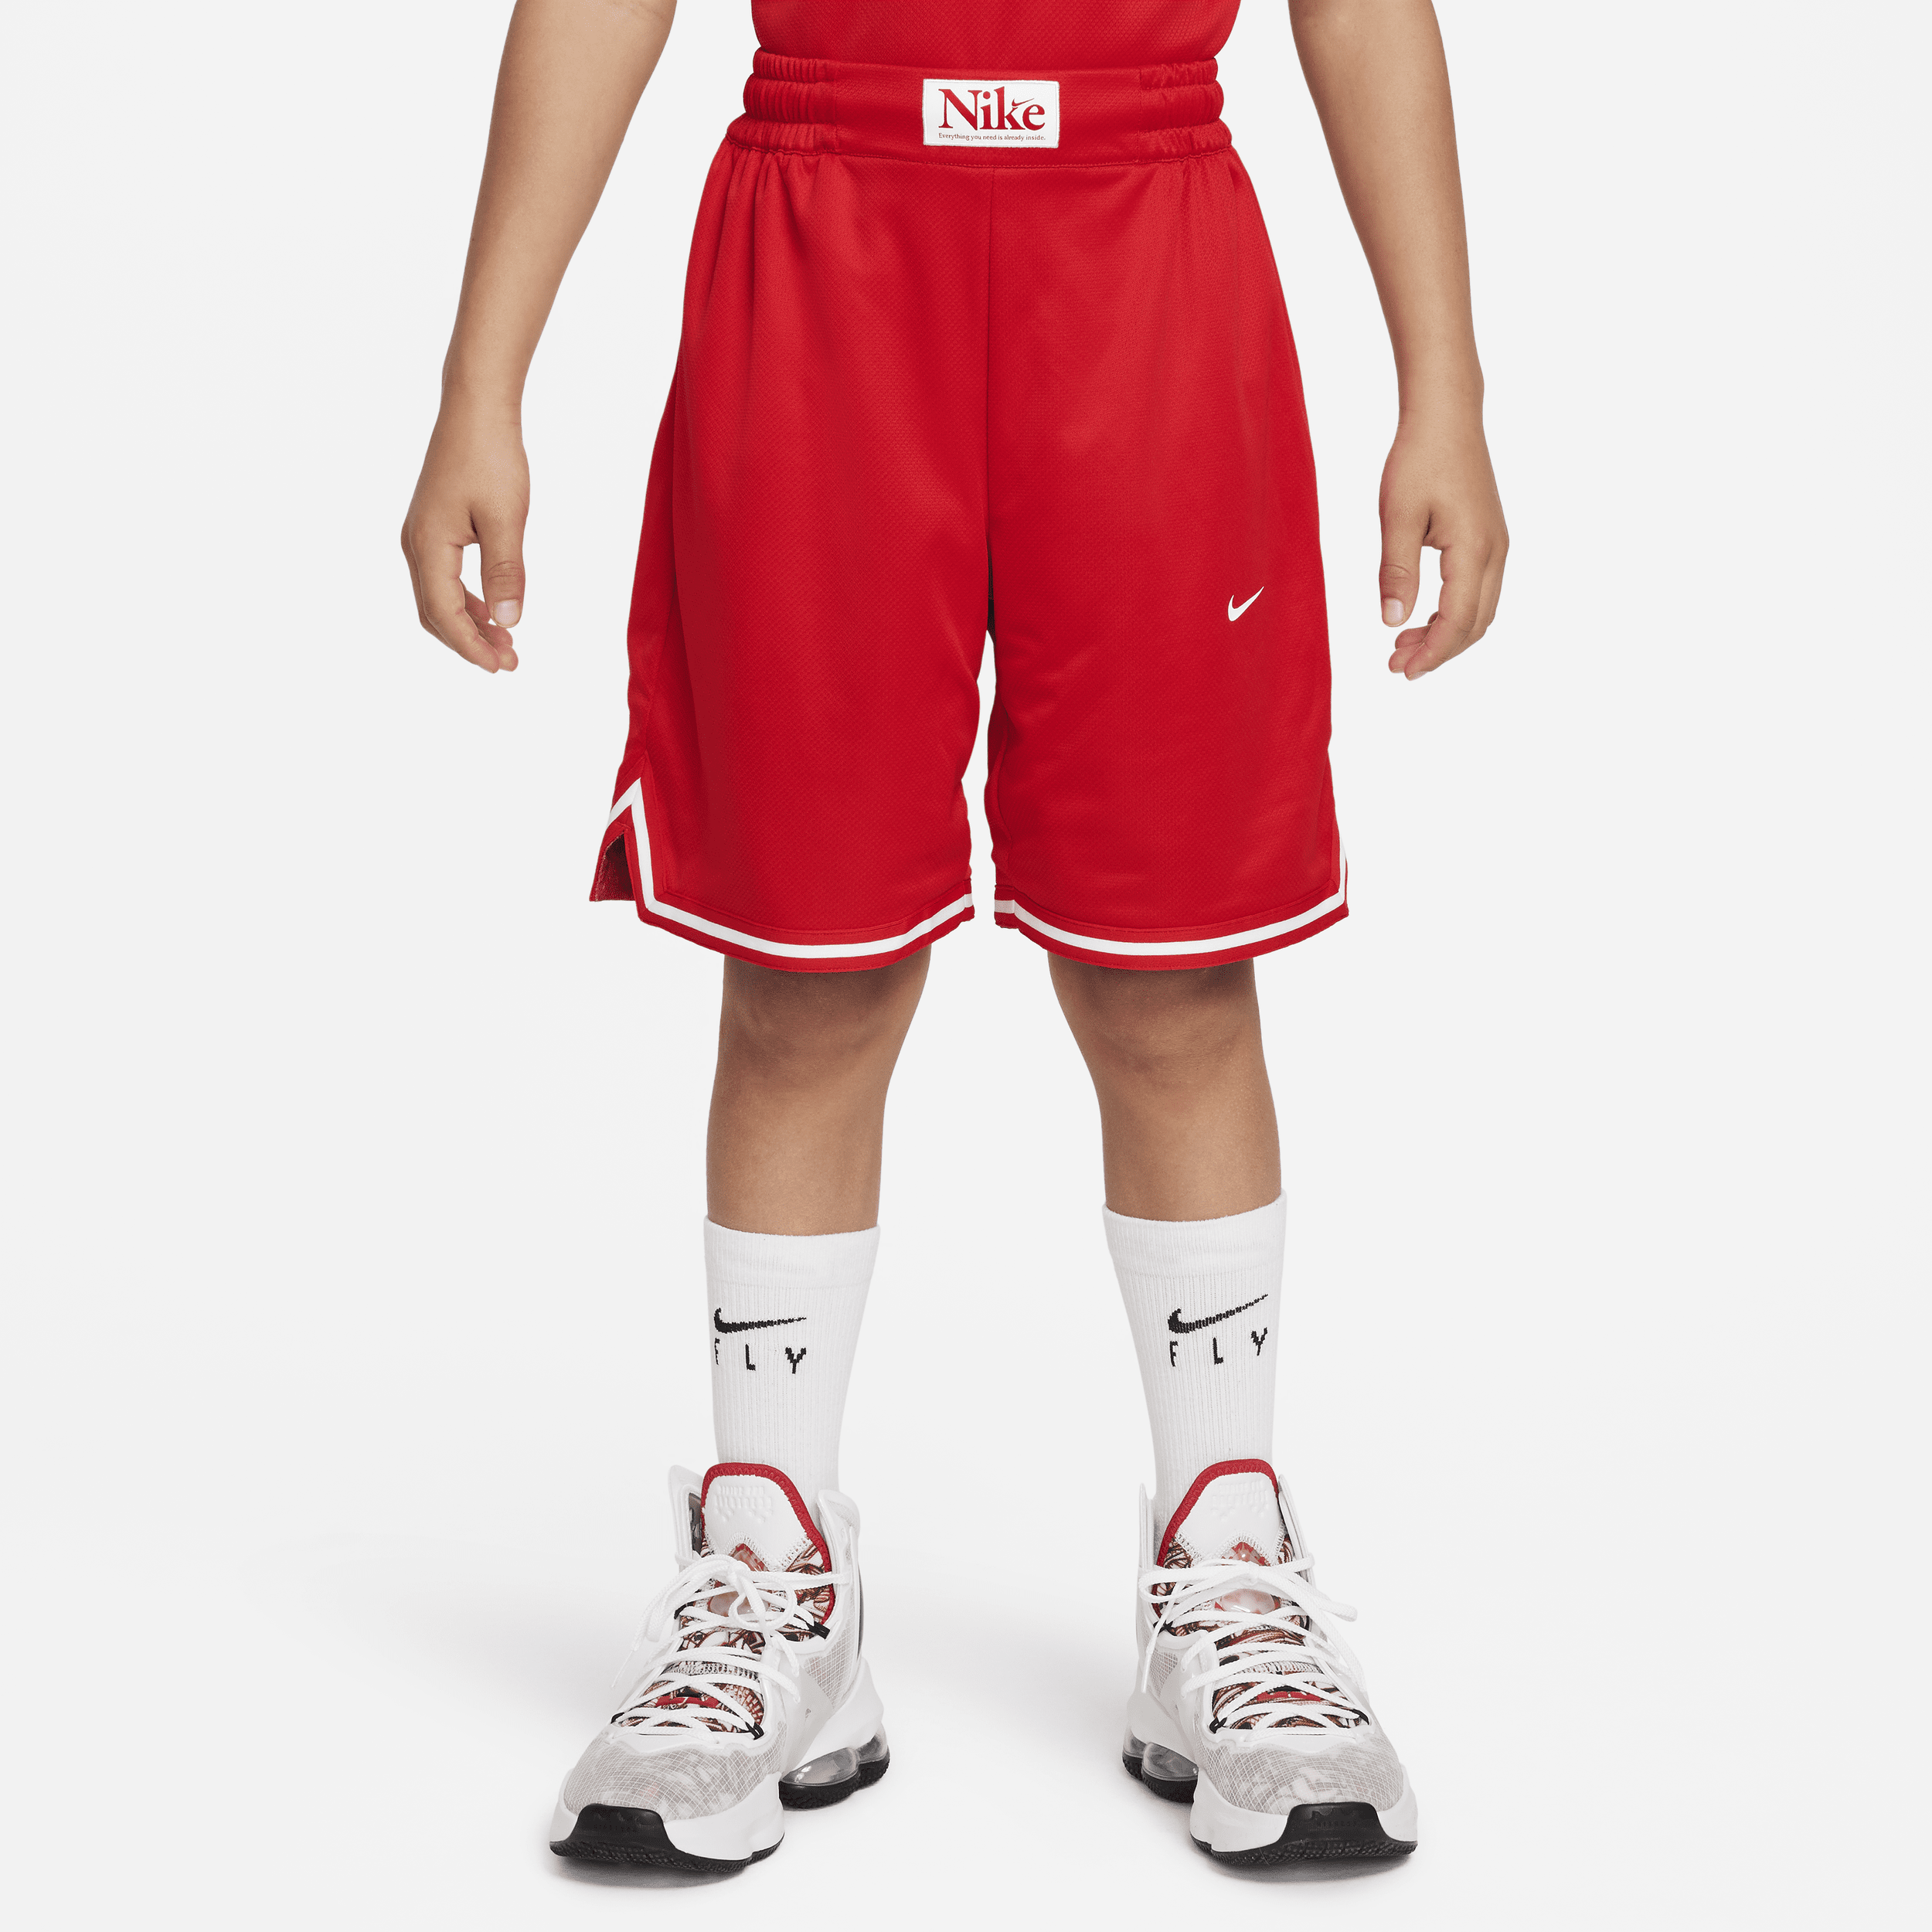 Vendbare Nike Culture of Basketball DNA-basketballshorts til større børn - rød